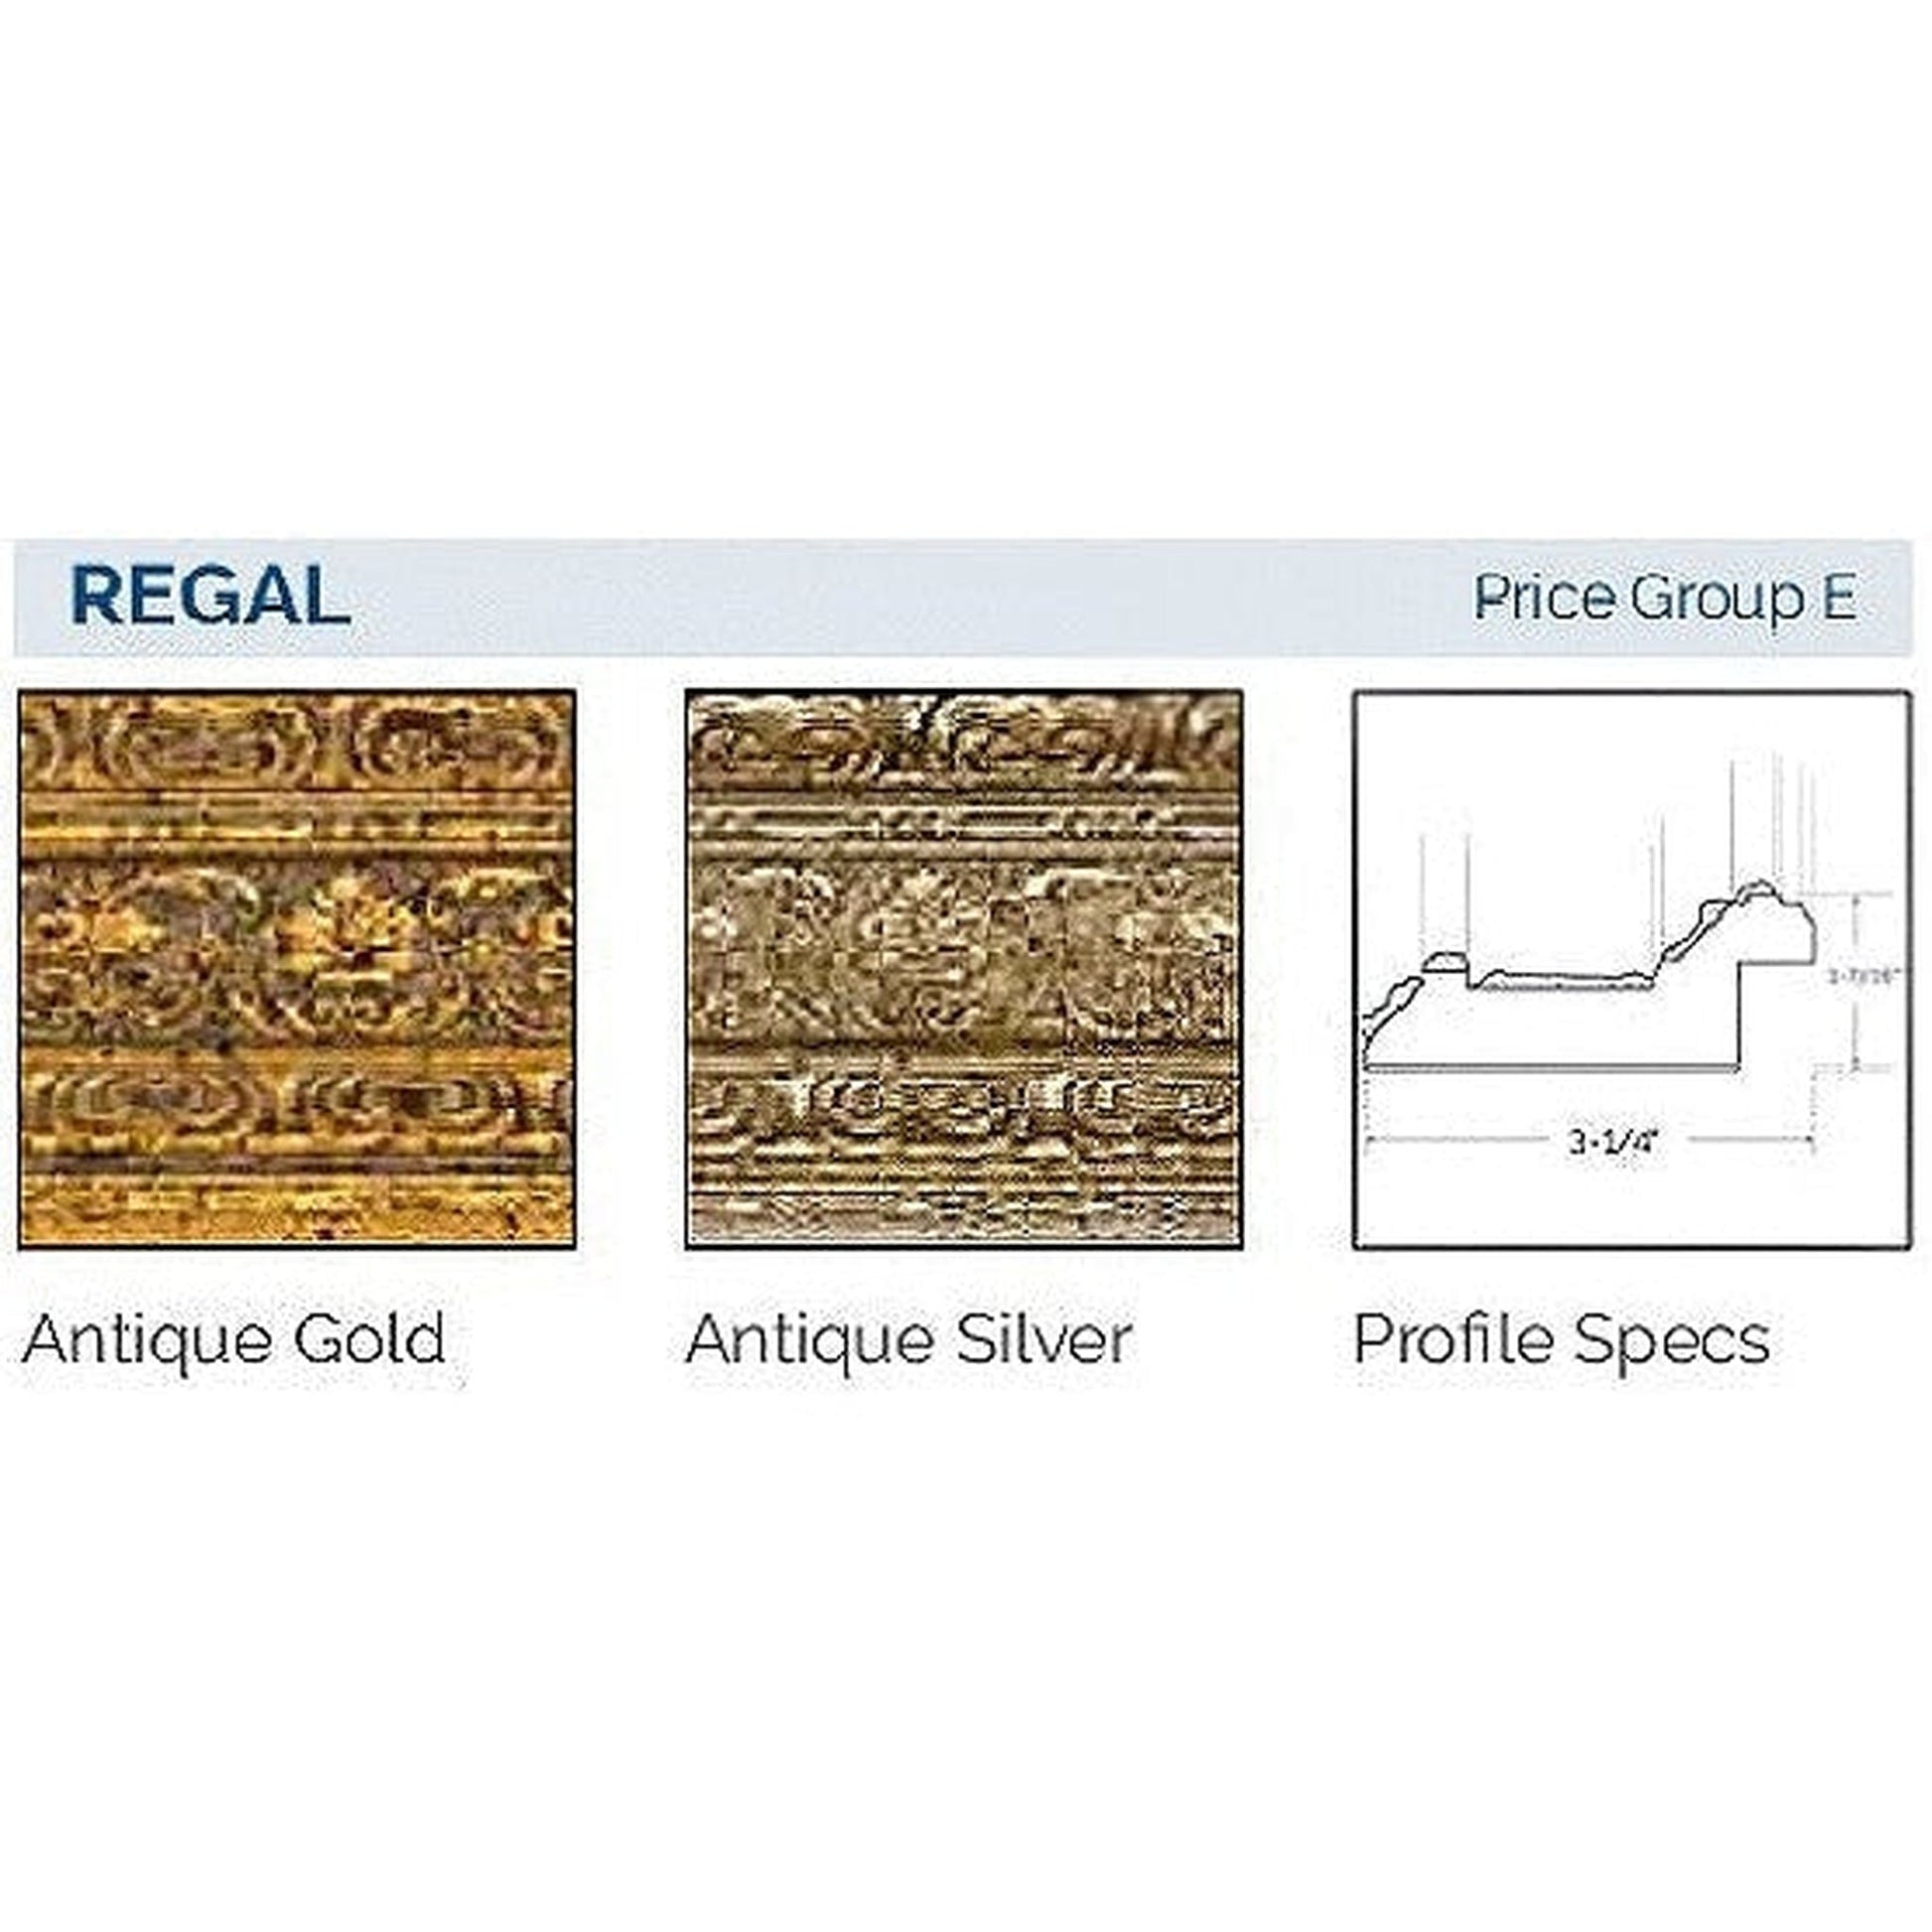 Afina Signature 63" x 36" Regal Antique Gold Recessed Four Door Medicine Cabinet With Beveled Edge Mirror